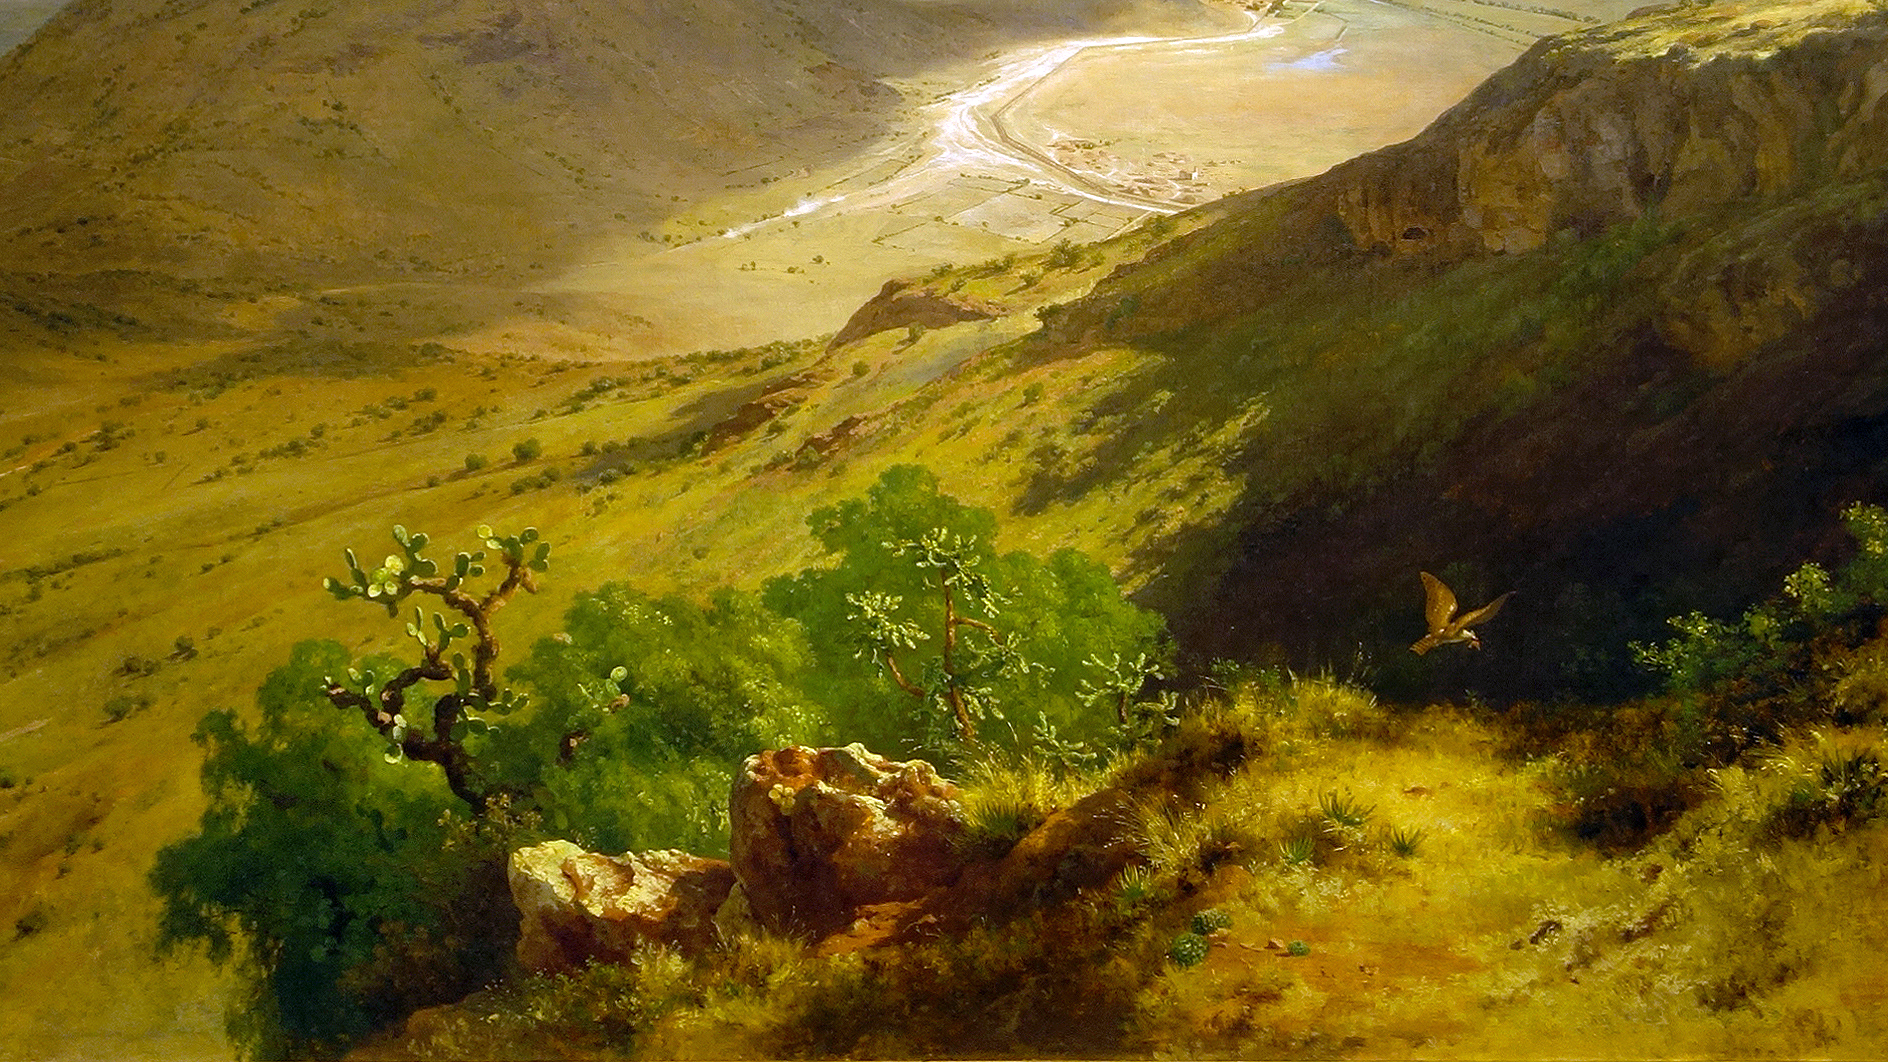 Detail of José María Velasco, The Valley of Mexico (Valle de México), 1877, oil on canvas, 160.5 x 229.7 cm (Museo Nacional de Arte, INBA, Mexico City)